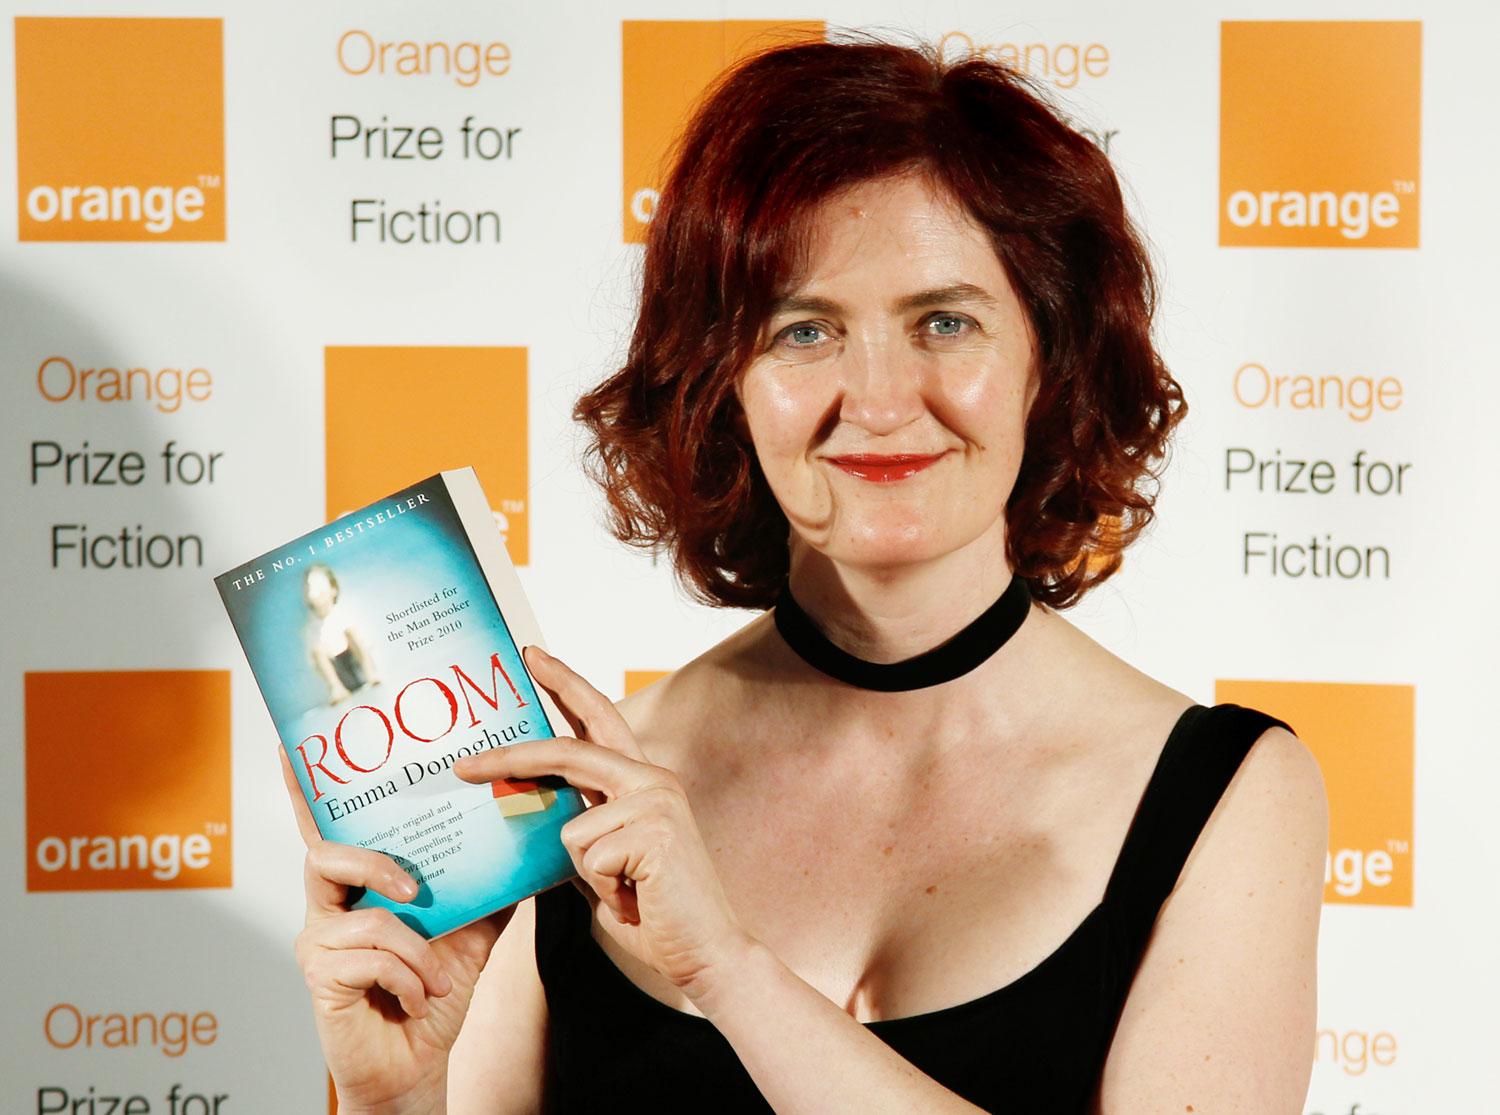 Az Oscar-várományos Emma Donoghue a 2011-es Orange irodalmi díj kiosztóján 